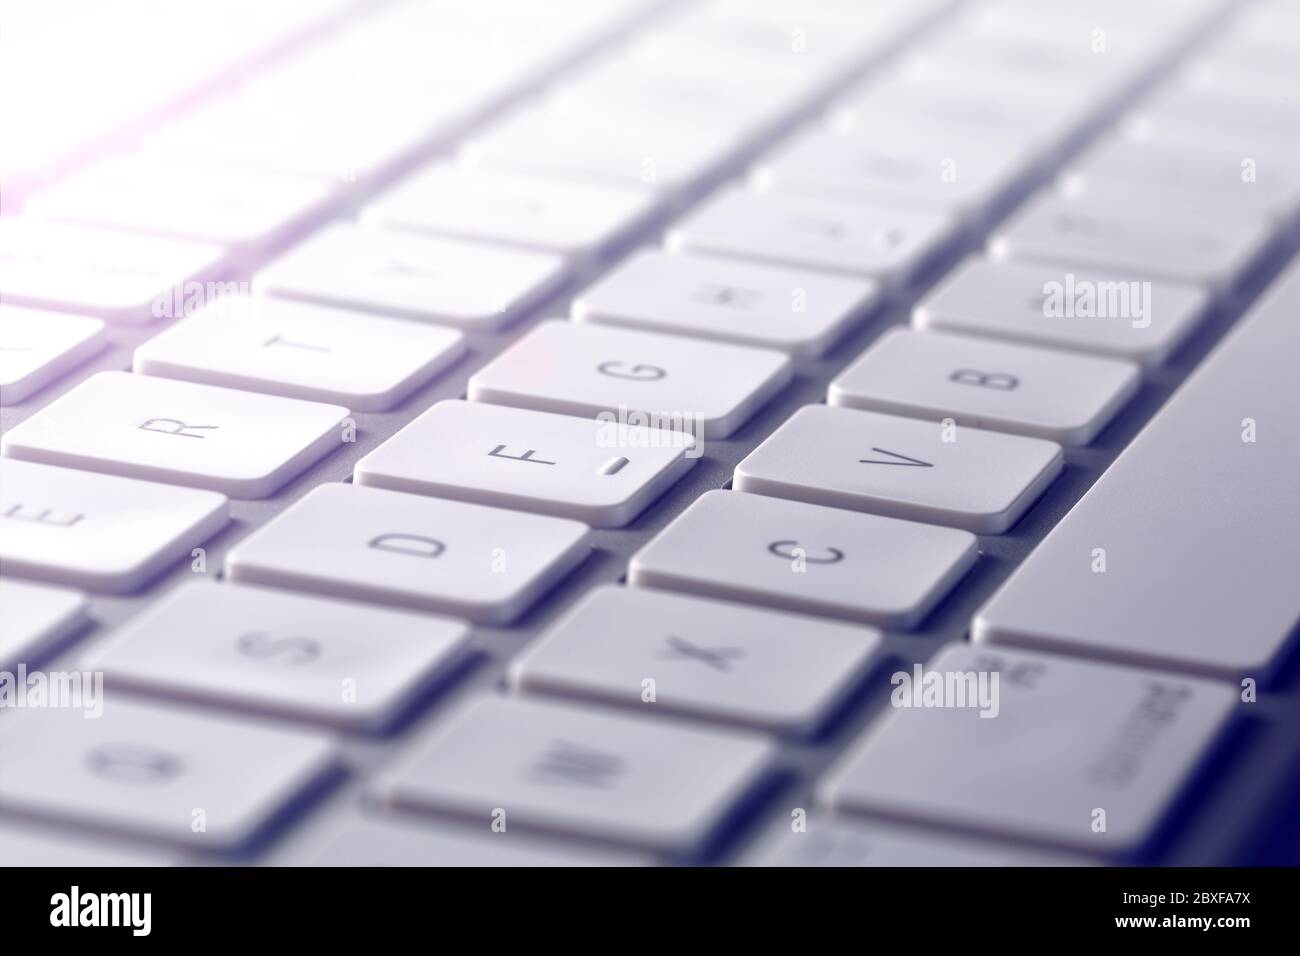 Laptop Keyboard Images - Free Download on Freepik